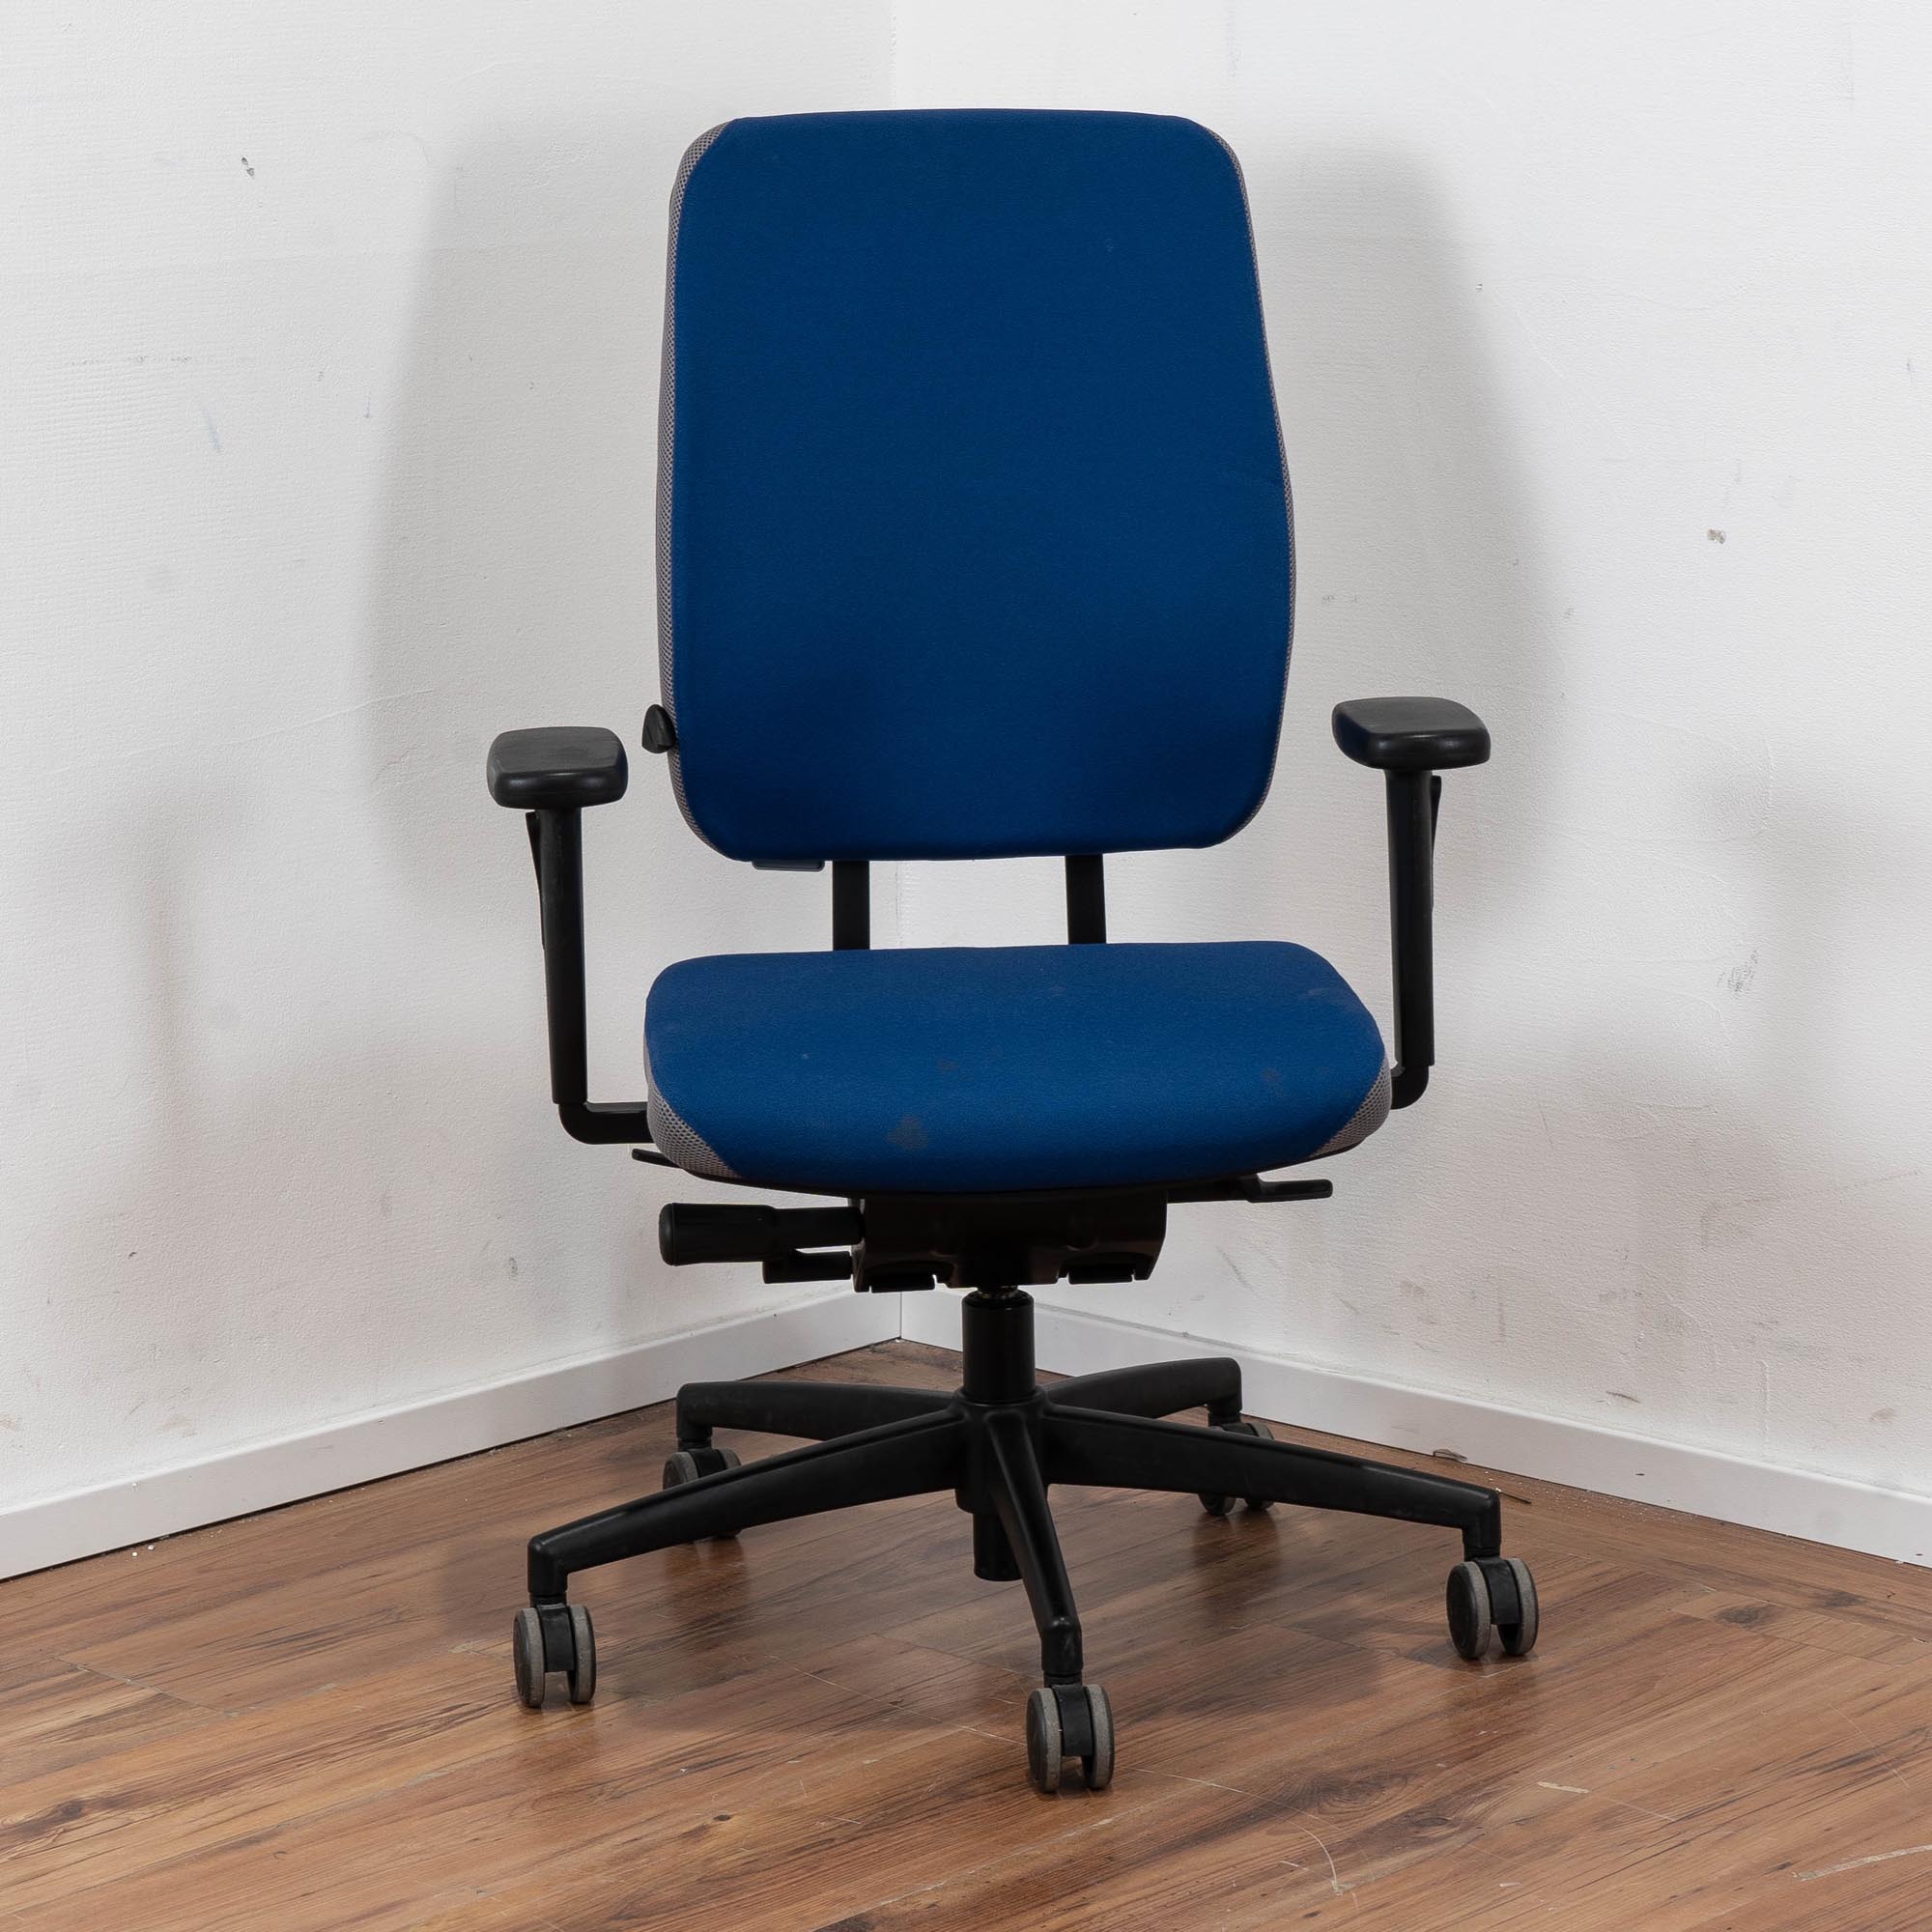 Nowy Styl Bürodrehstuhl Polster blau - Rückenlehne blau - mit Armlehnen 